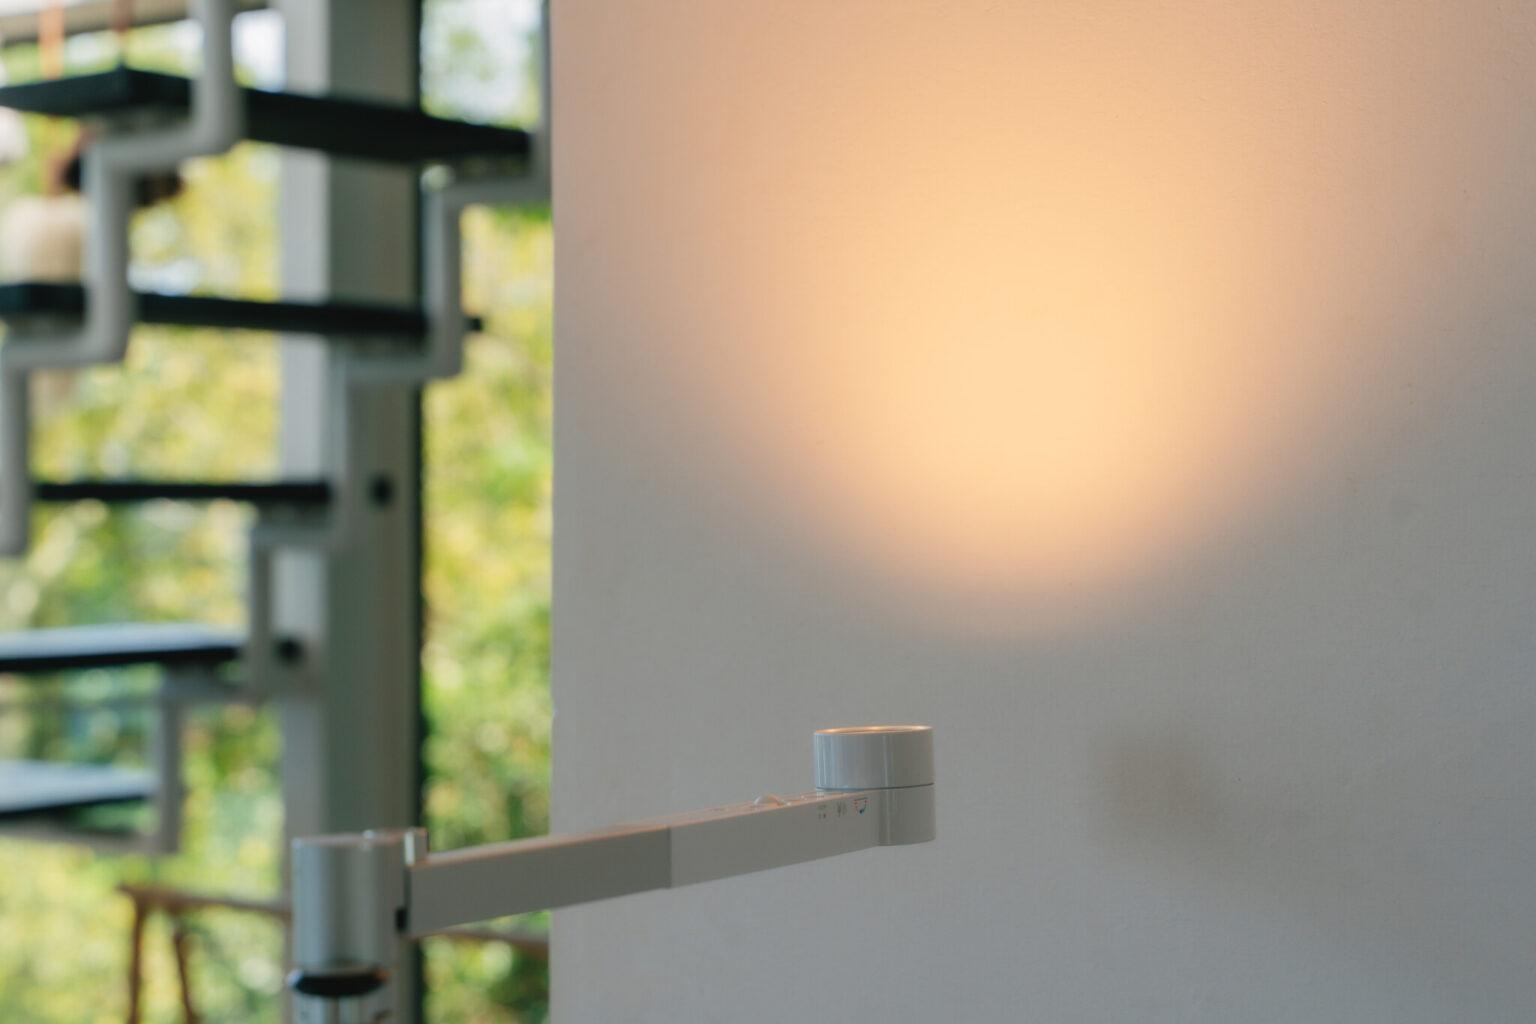 「Dyson Lightcycle Morph™デスクライト」は、寒色にも暖色にも自由に色を変えられるライト。写真のように壁に反射させて間接照明のように使うのもおすすめです。ライトの支柱部分には、USB-TypeCの充電機能も搭載。かゆい所に手が届く細かい設計もダイソンならでは。